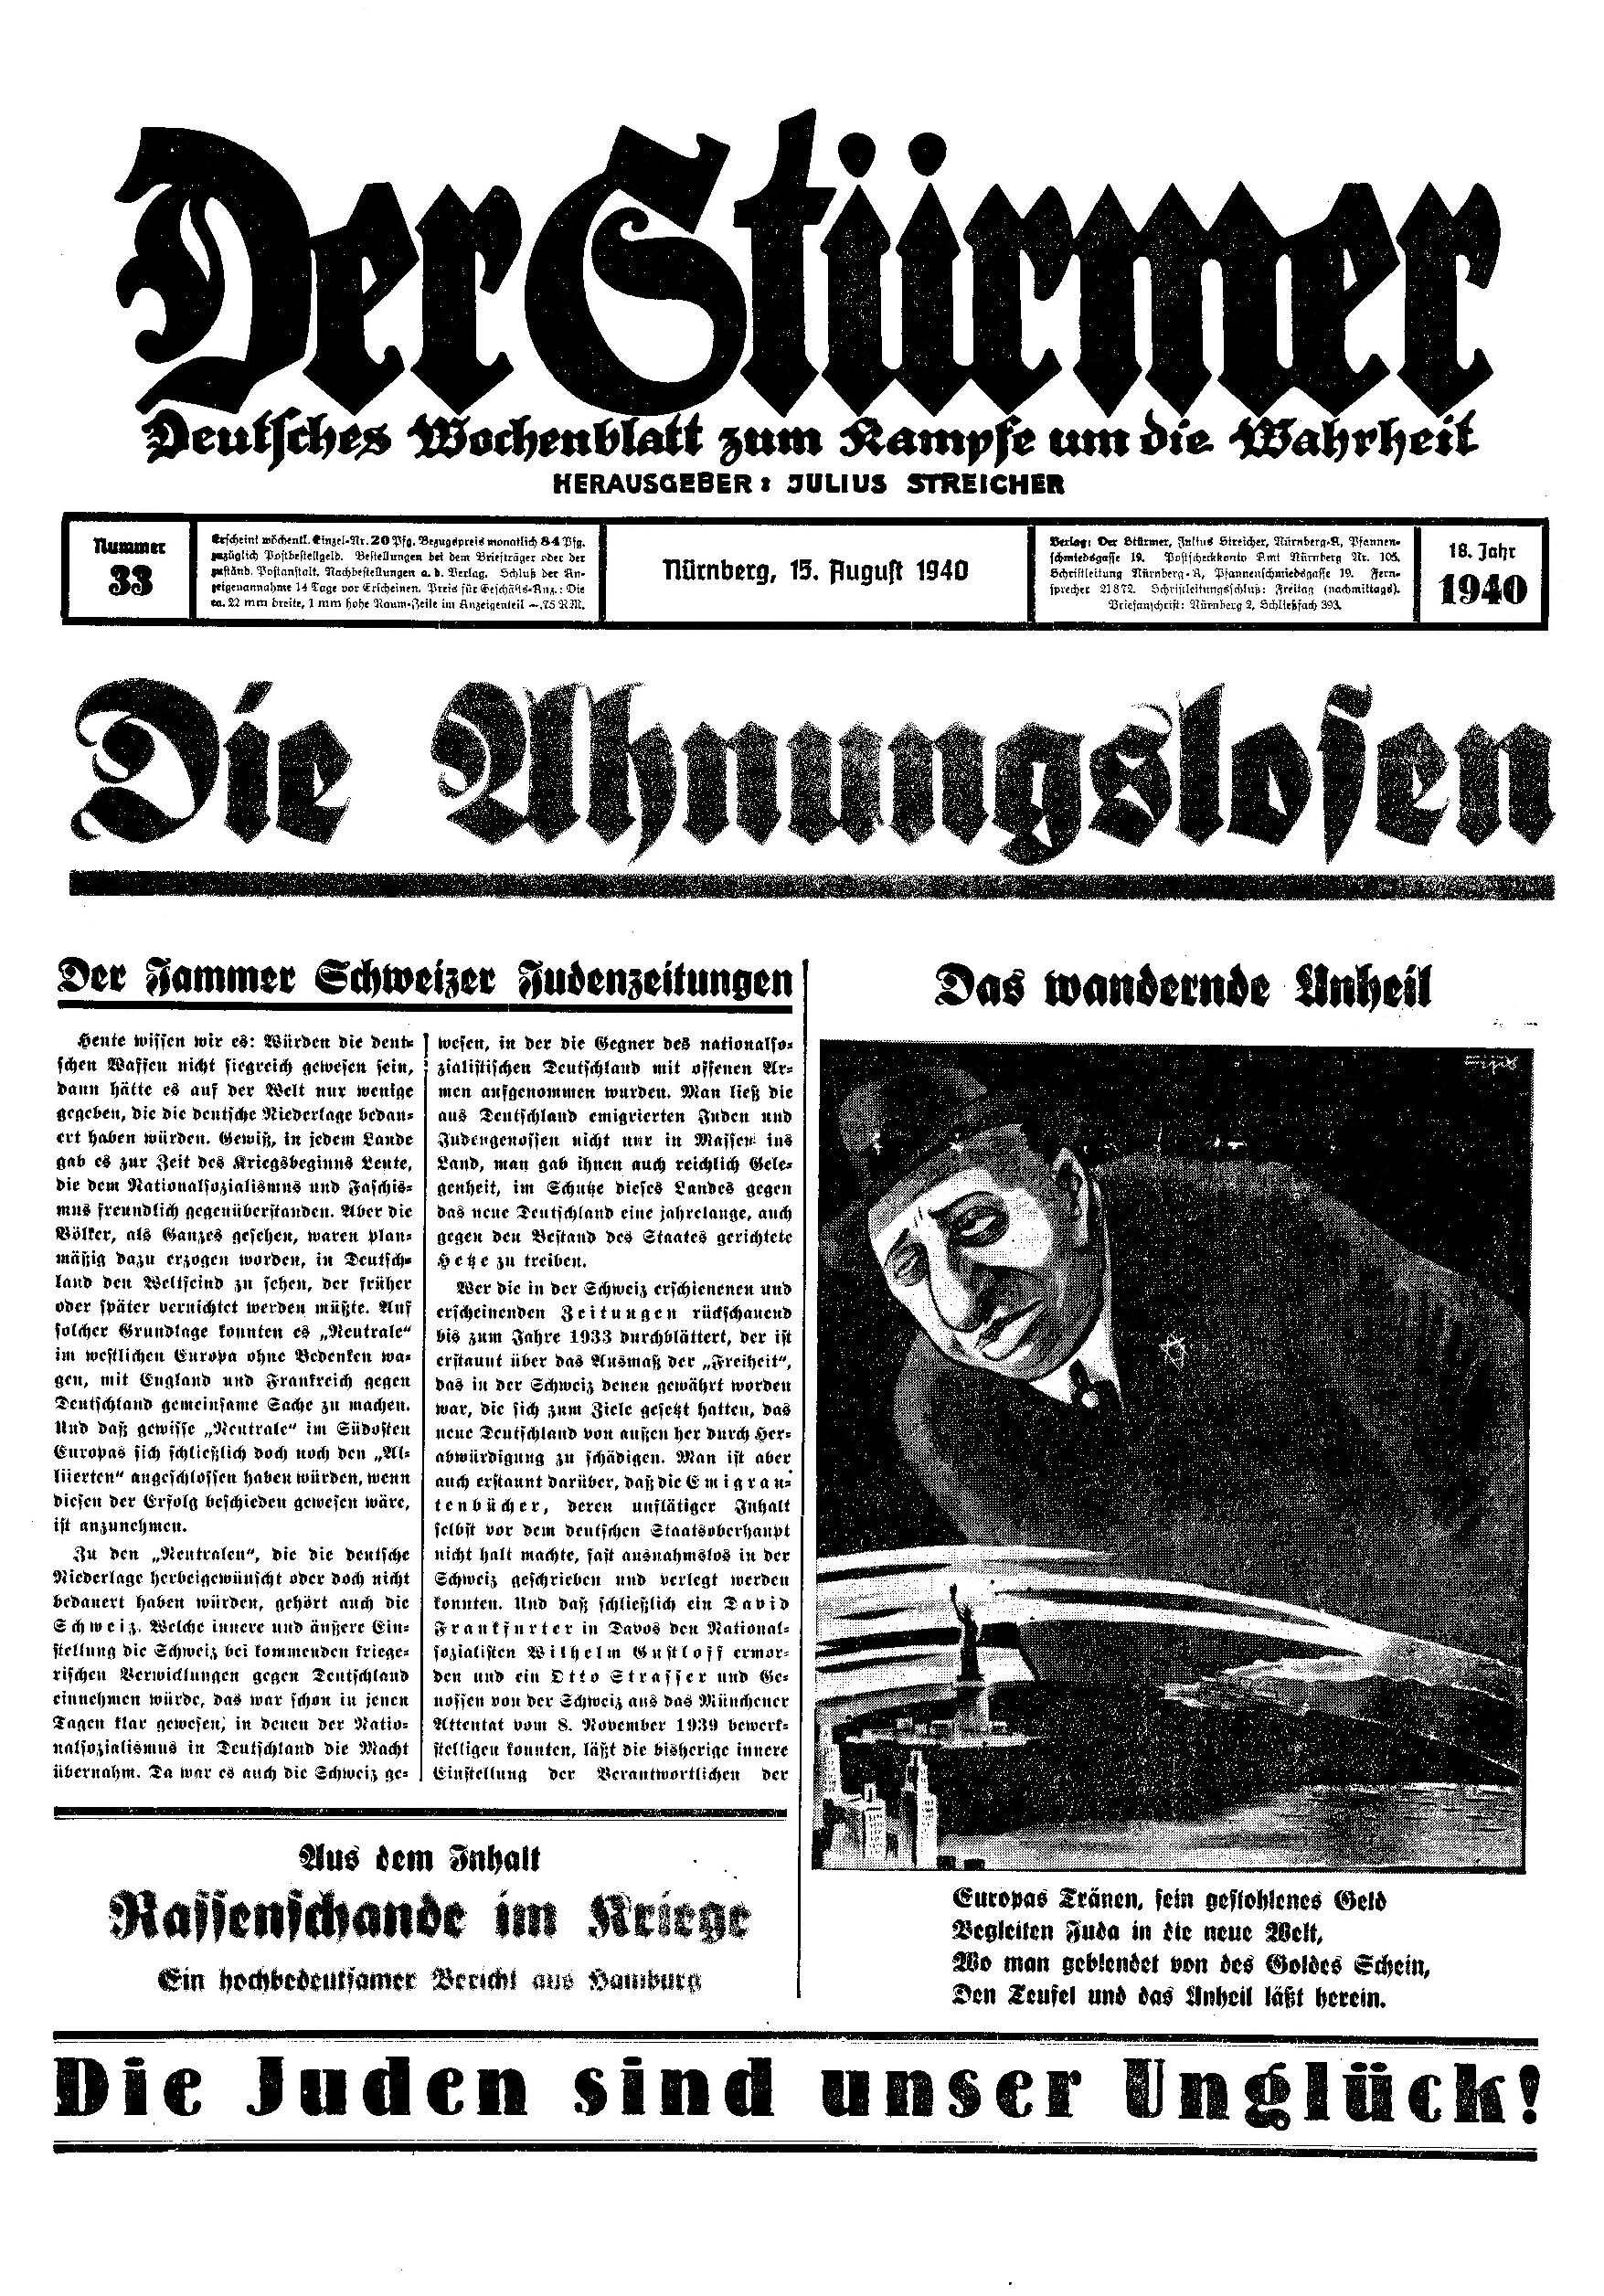 Der Stürmer - 1940 Nr. 33 - Die Ahnungslosen